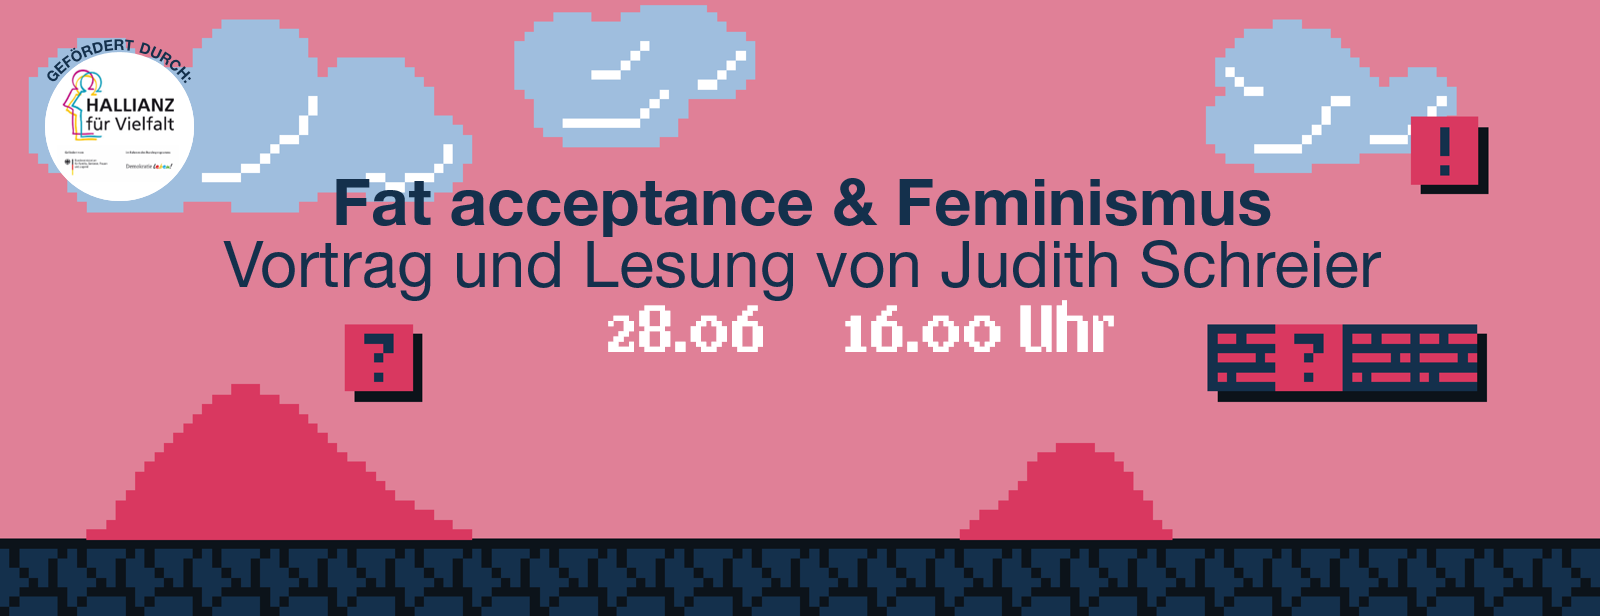 Fat Acceptance Feminismus Vortrag Von Judith Schreier Feminismen